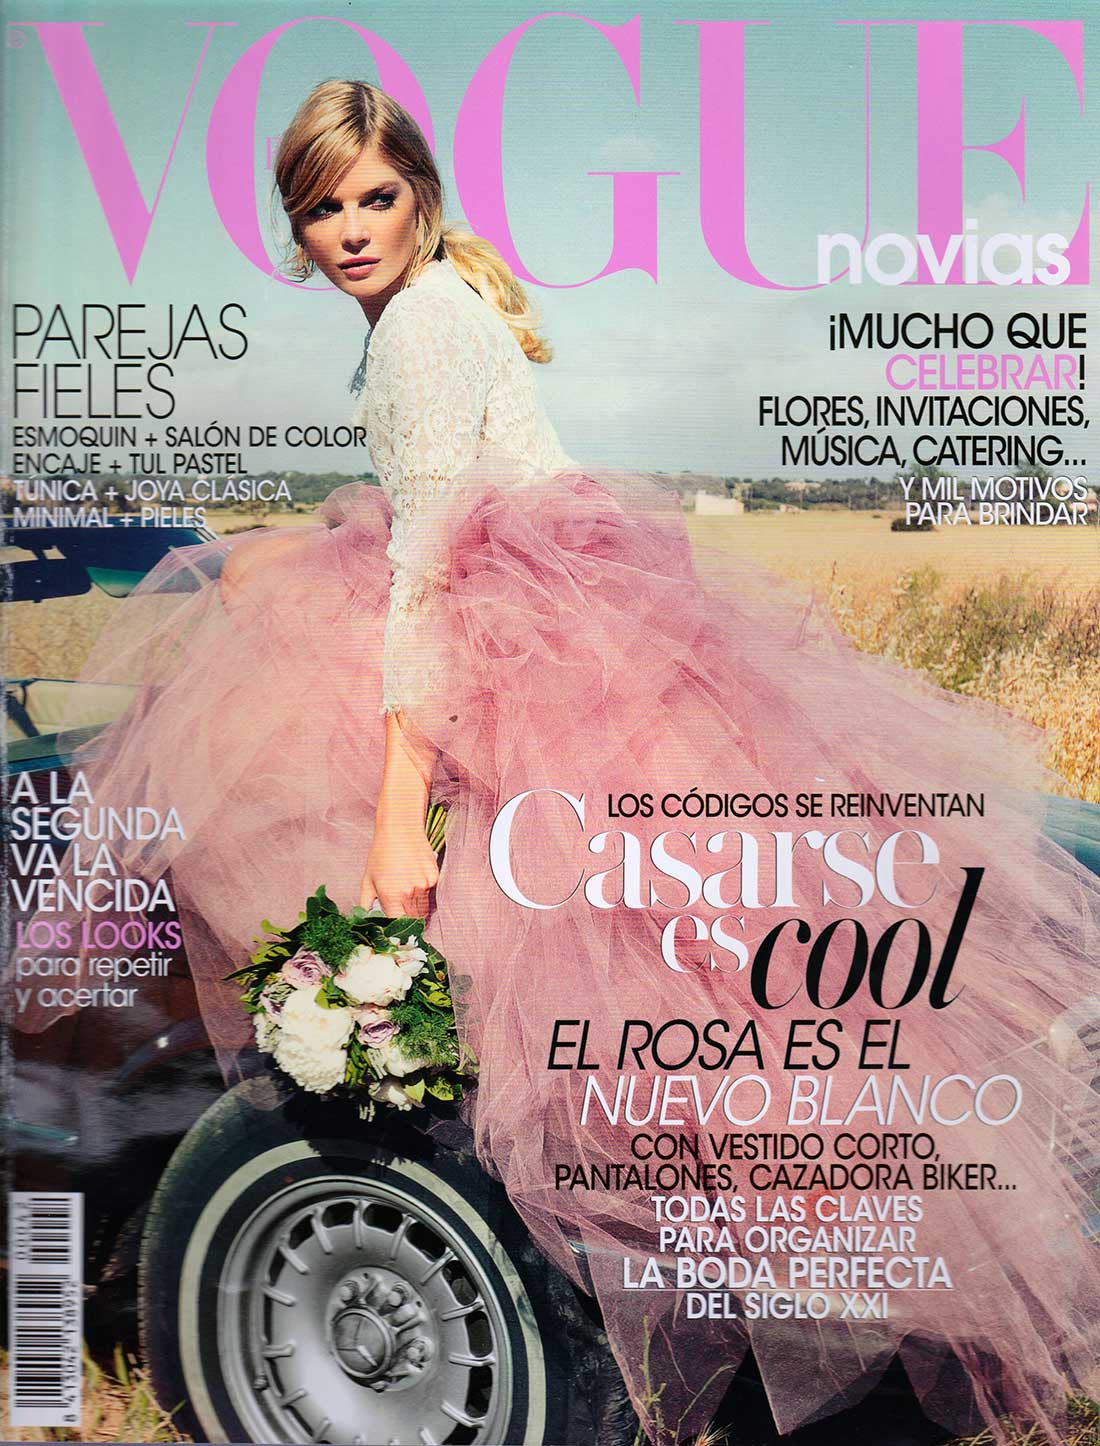 Vogue-novias-1-2